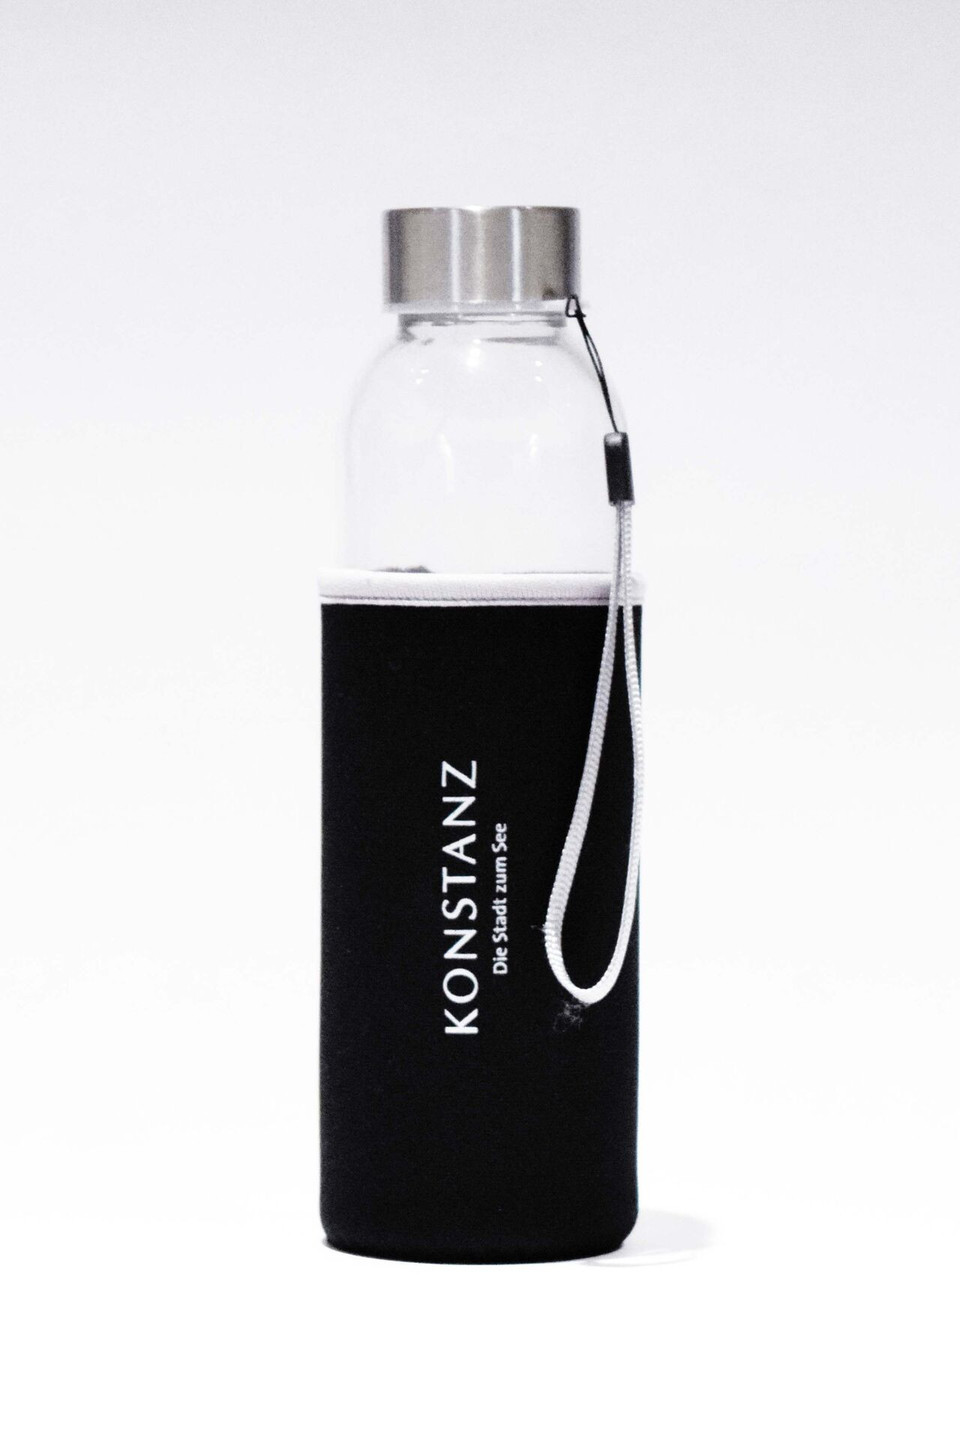 Konstanz-Merchandise-Wasserflasche_Copyright_MTK-Franziska-Heinz